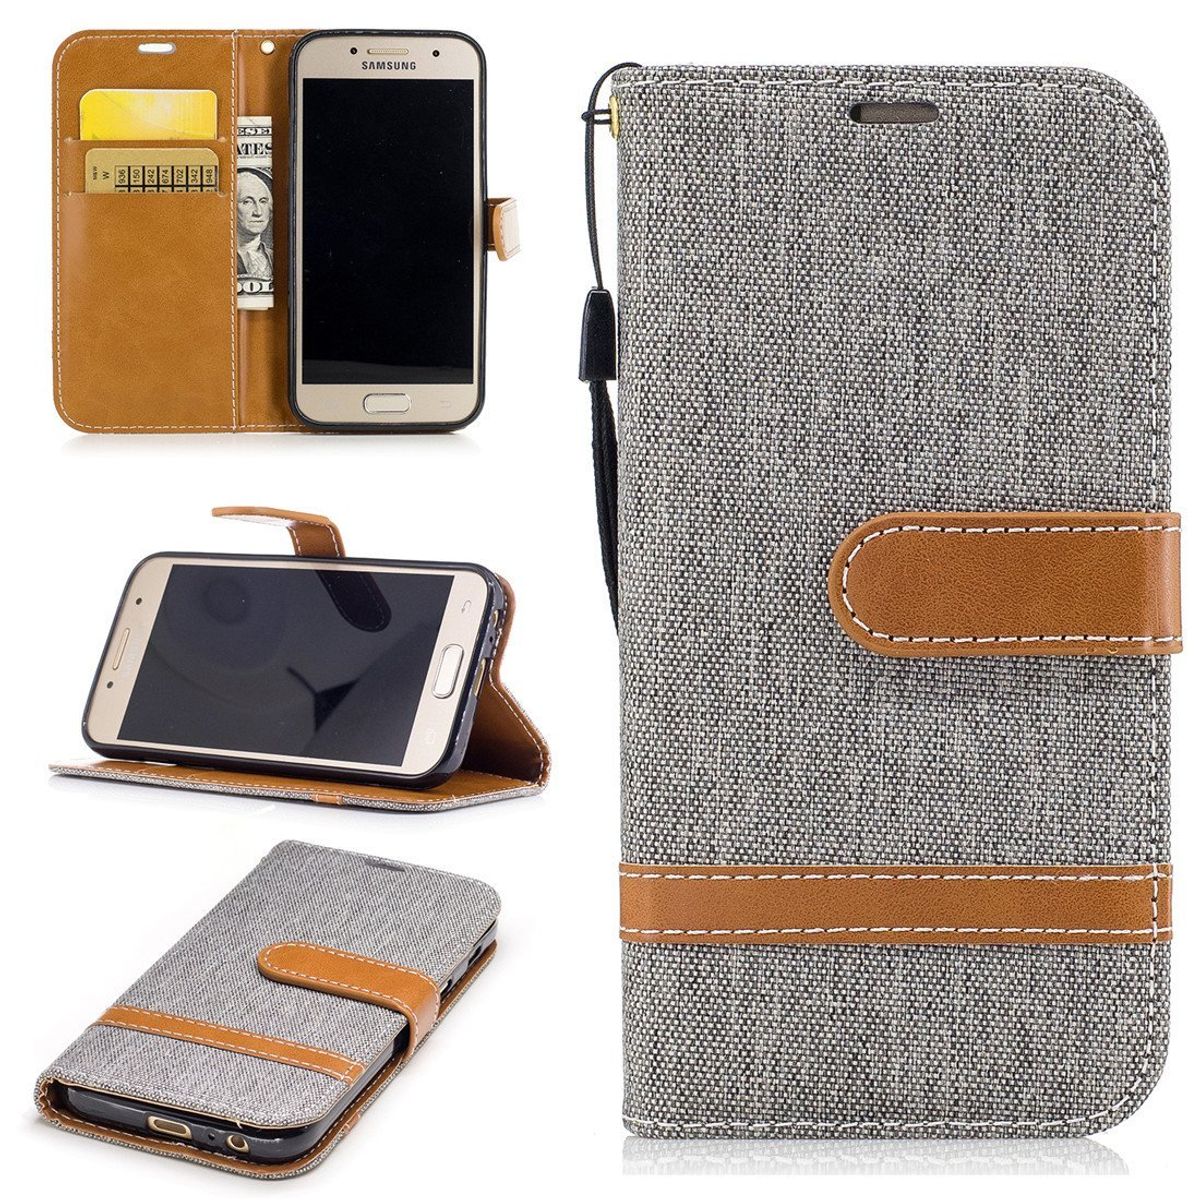 König Design Handyhülle kompatibel mit Samsung Galaxy A3 (2017) Schutztasche Wallet Cover 360 Case Grau